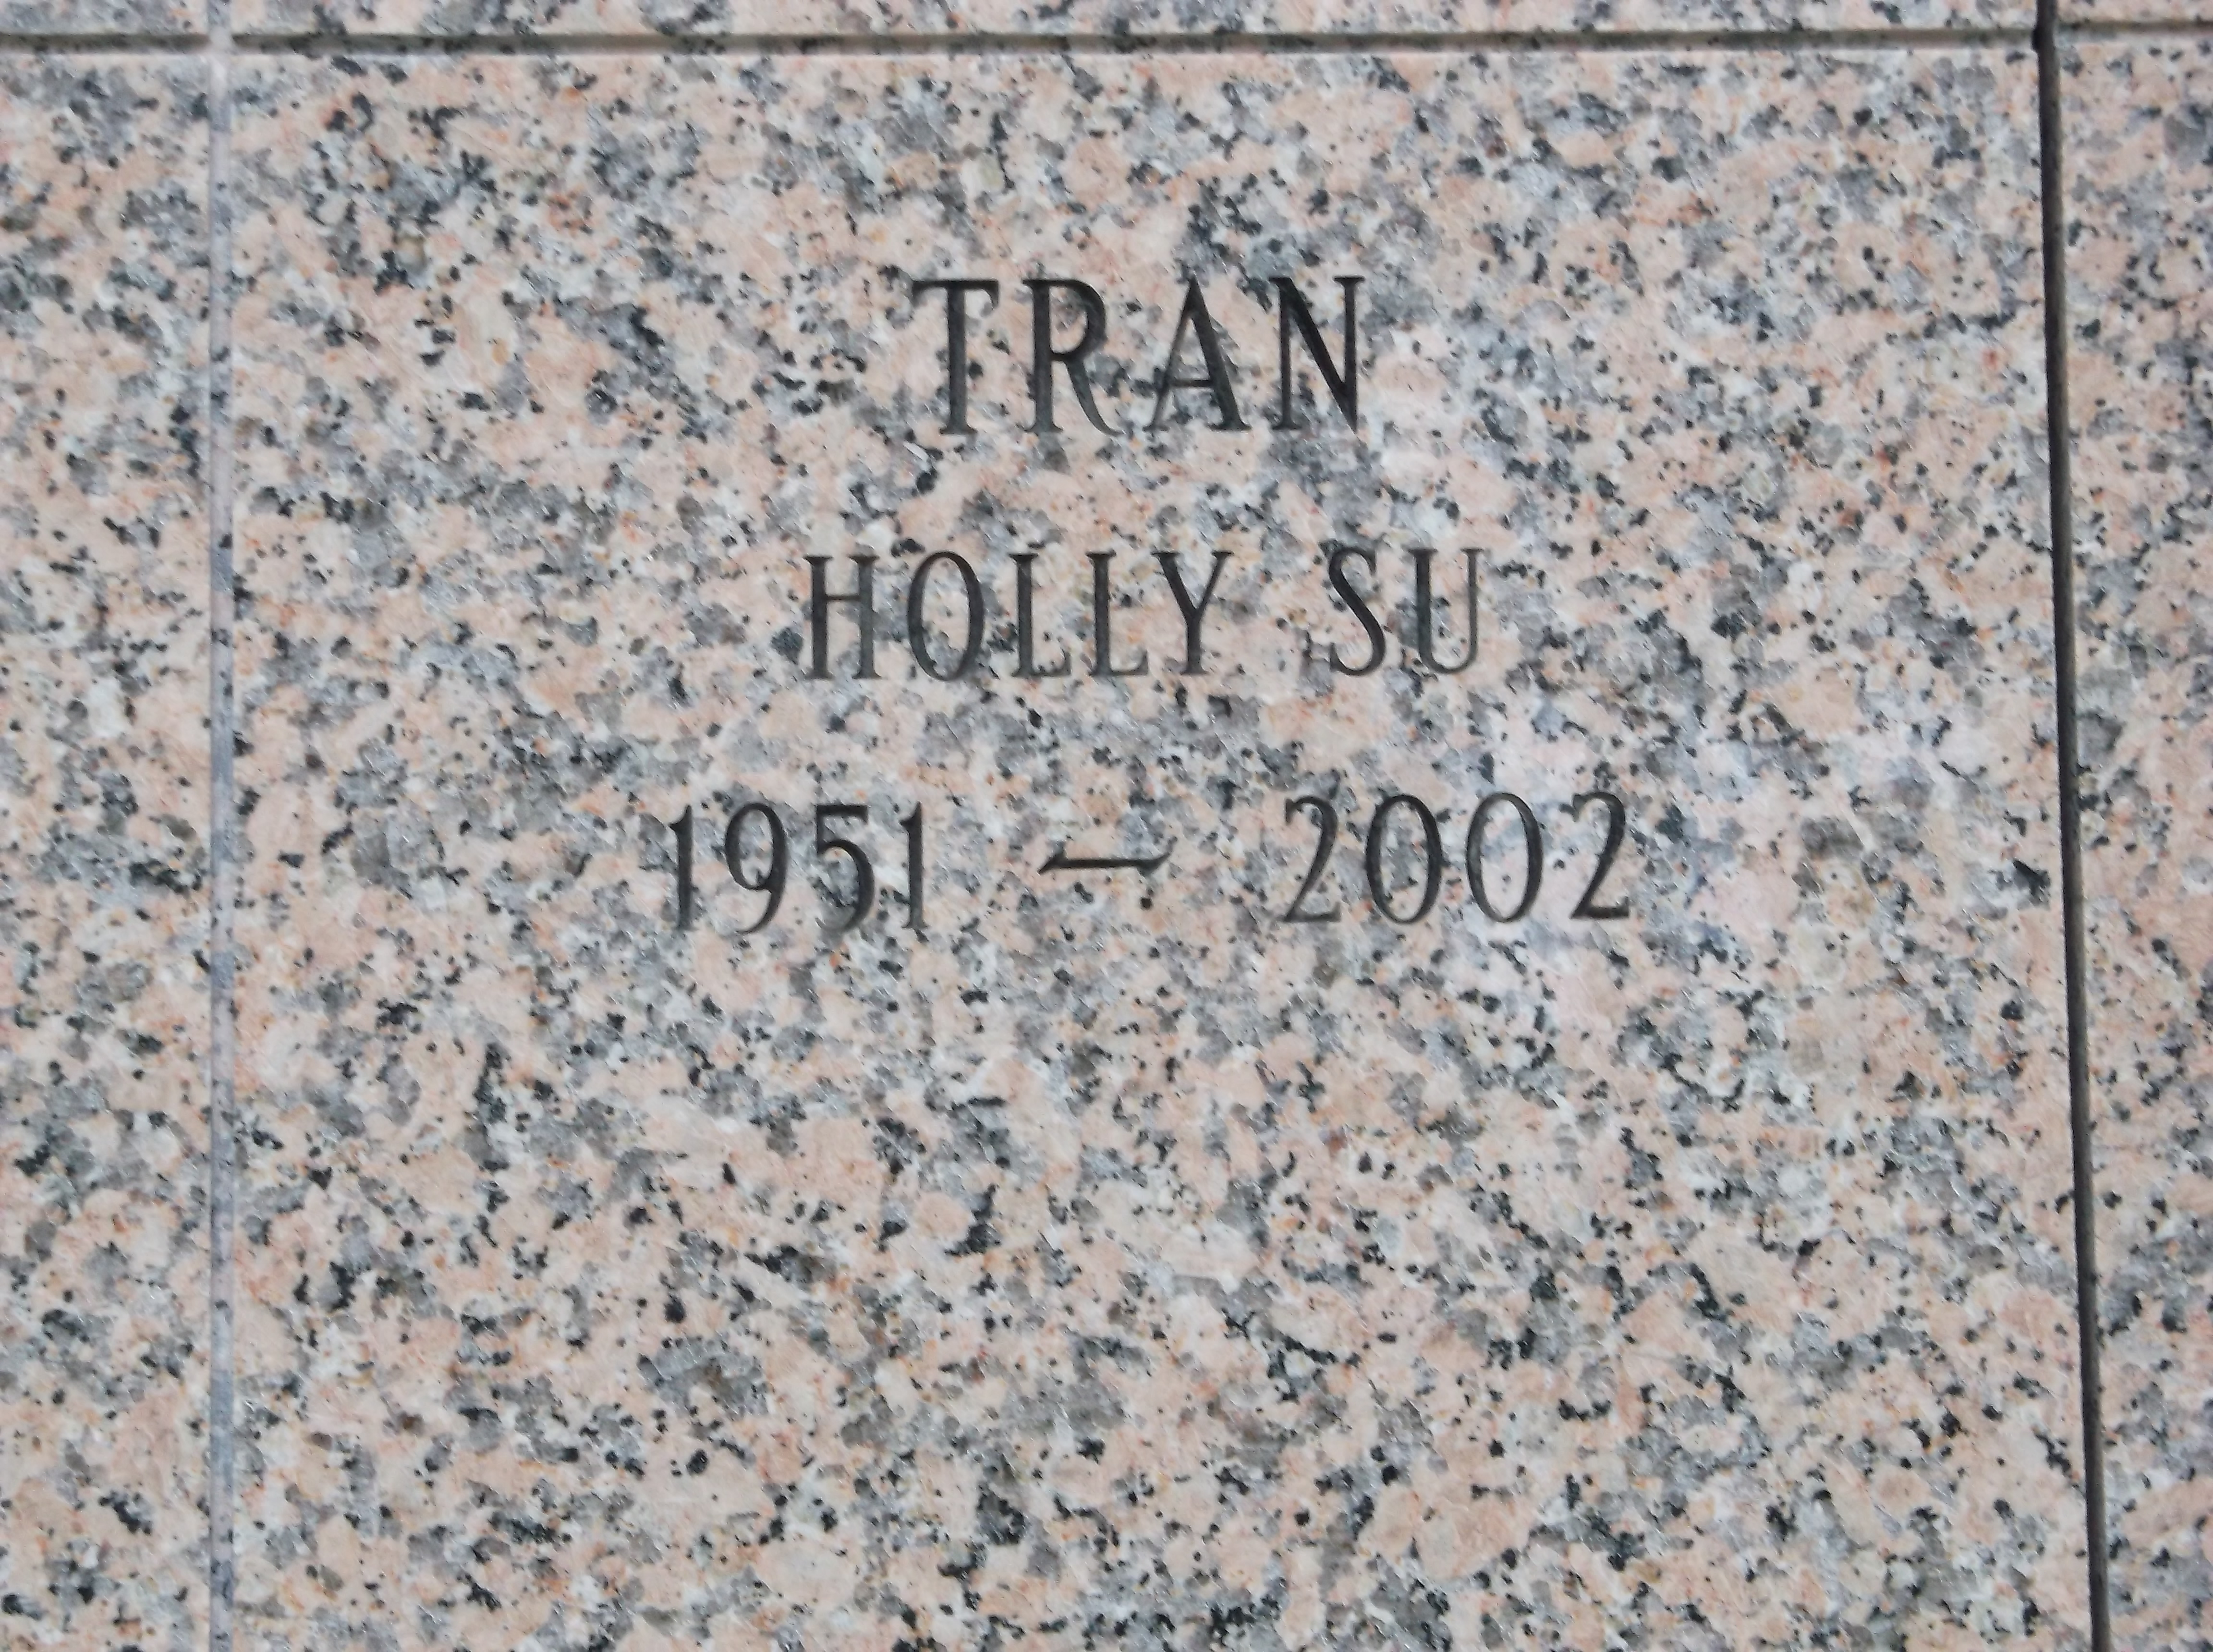 Holly Su Tran